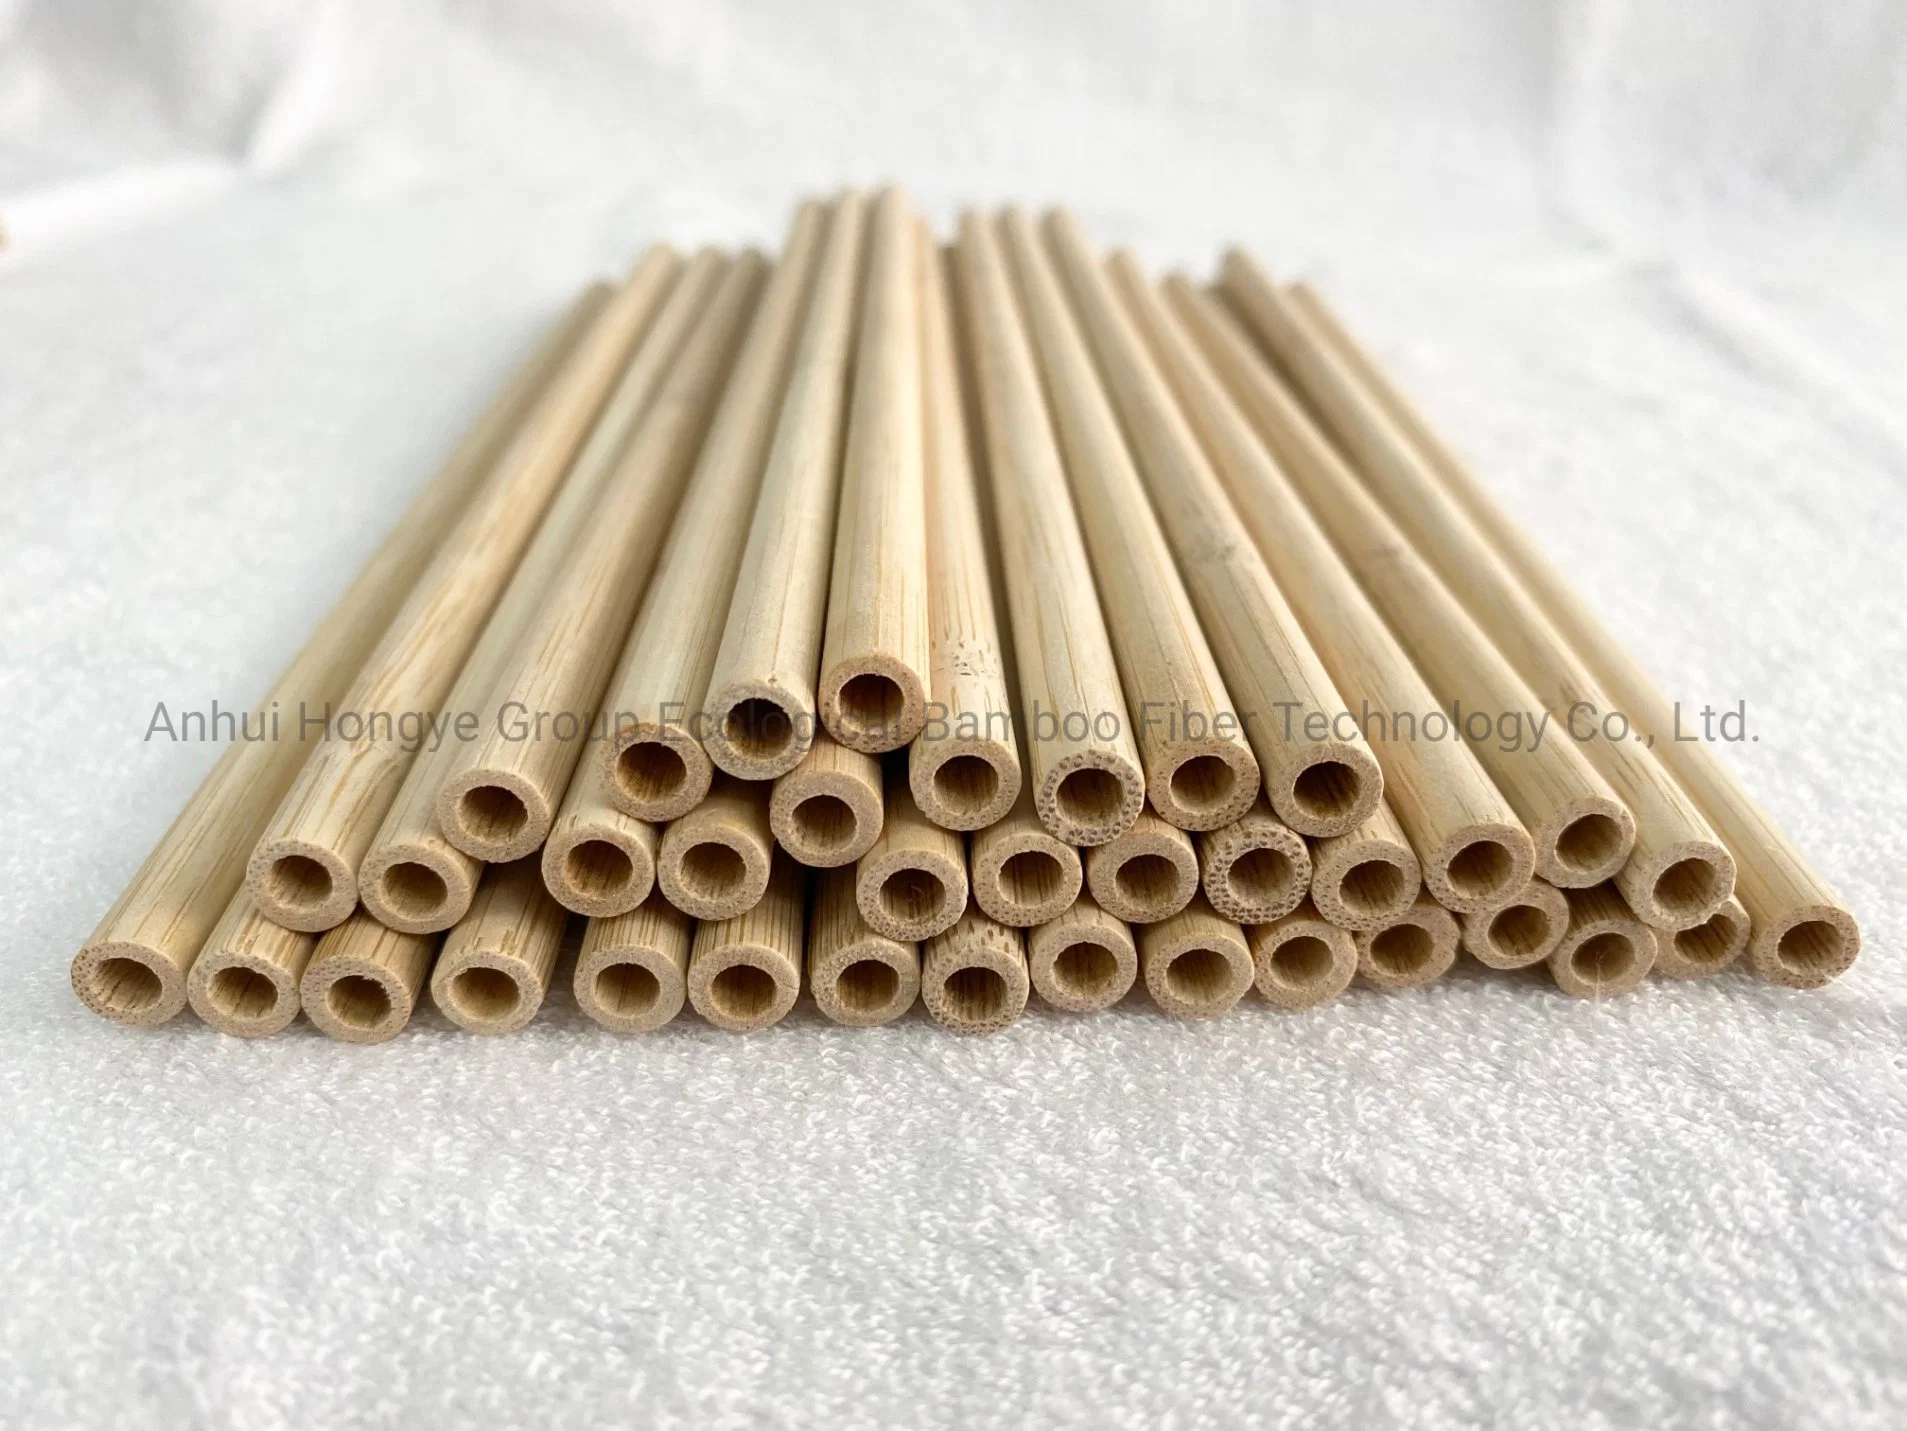 La carbonización desechables de bambú 100% biodegradables paja Venta caliente producto ecológica 7.0*200 mm.